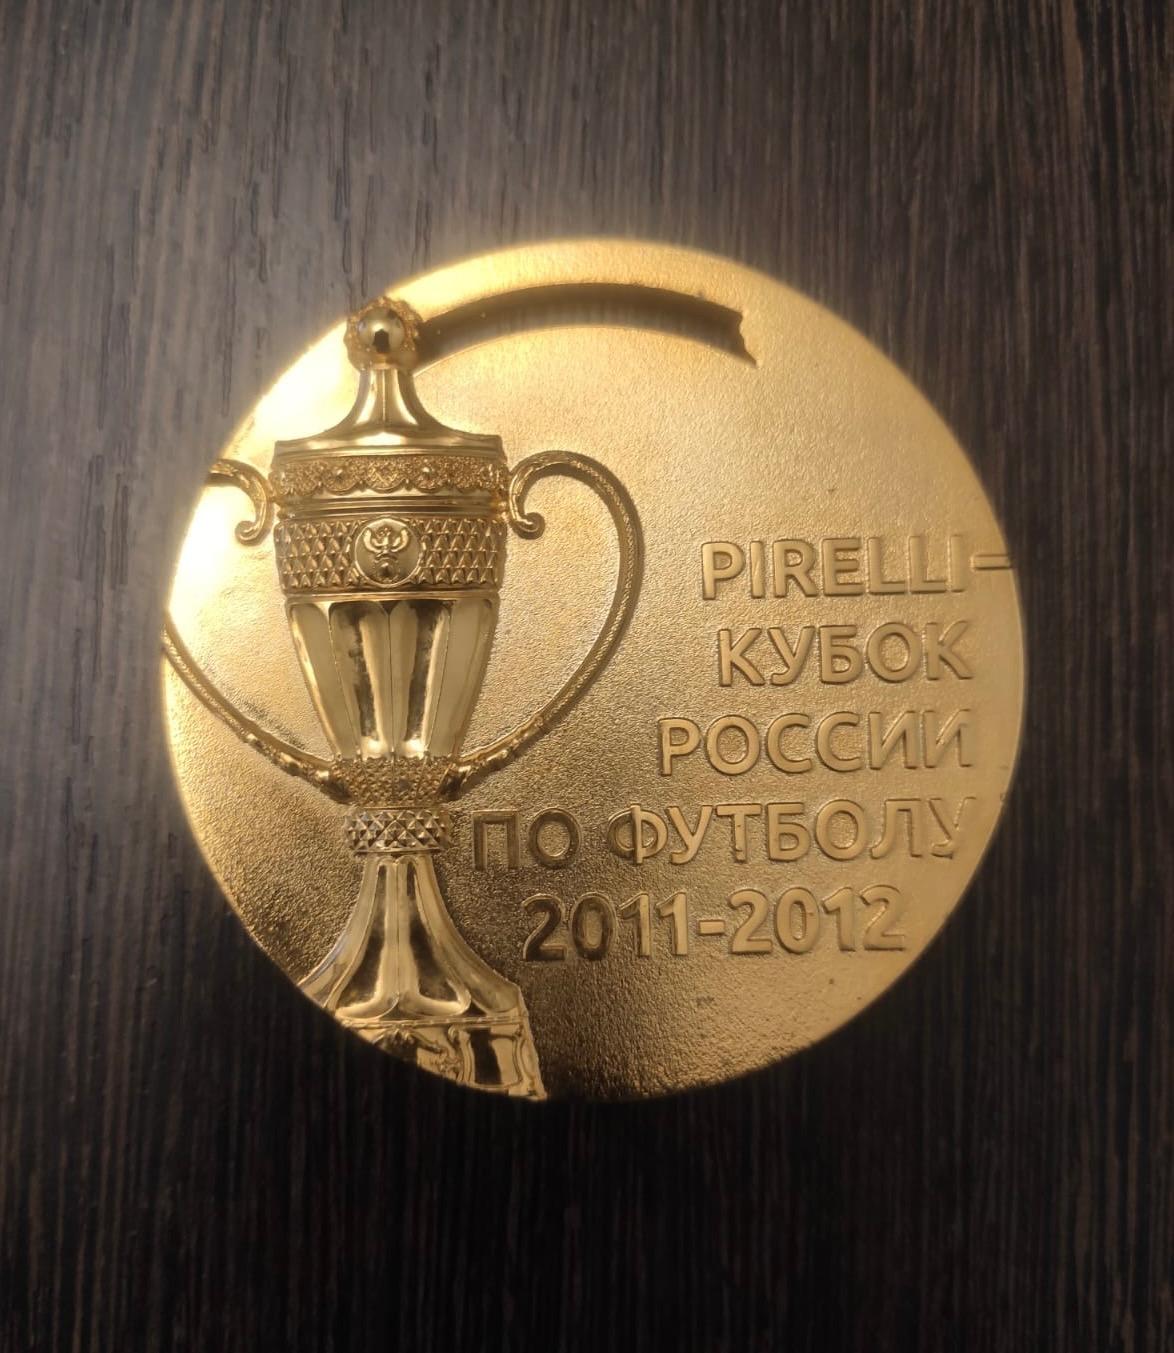 Медаль Pirelli Кубок России 2011-2012 Рубин